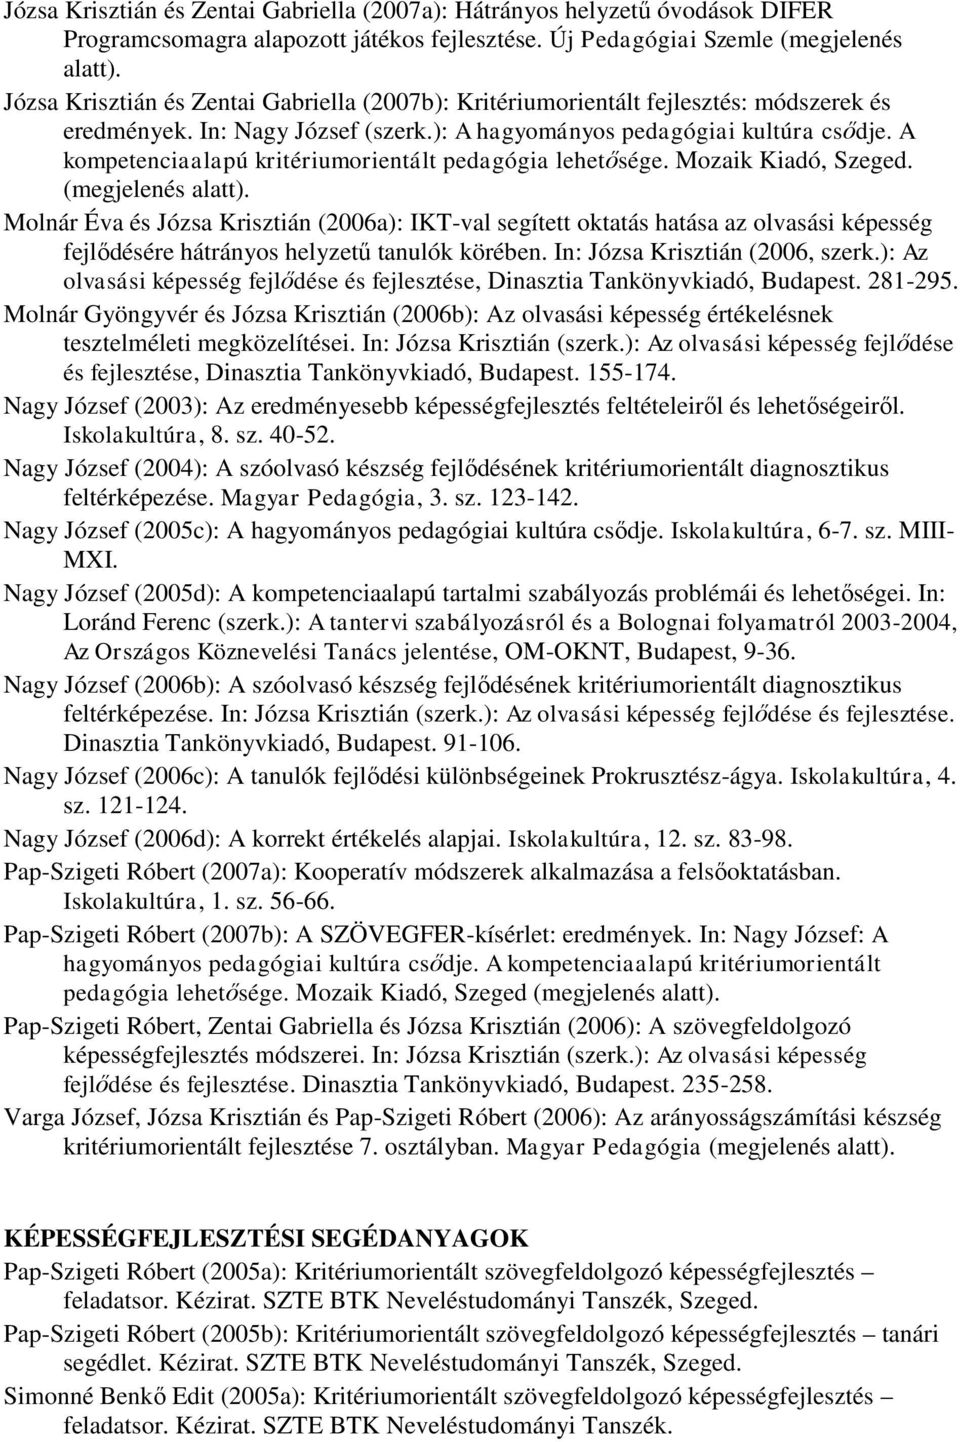 A kompetenciaalapú kritériumorientált pedagógia lehetősége. Mozaik Kiadó, Szeged. (megjelenés alatt).